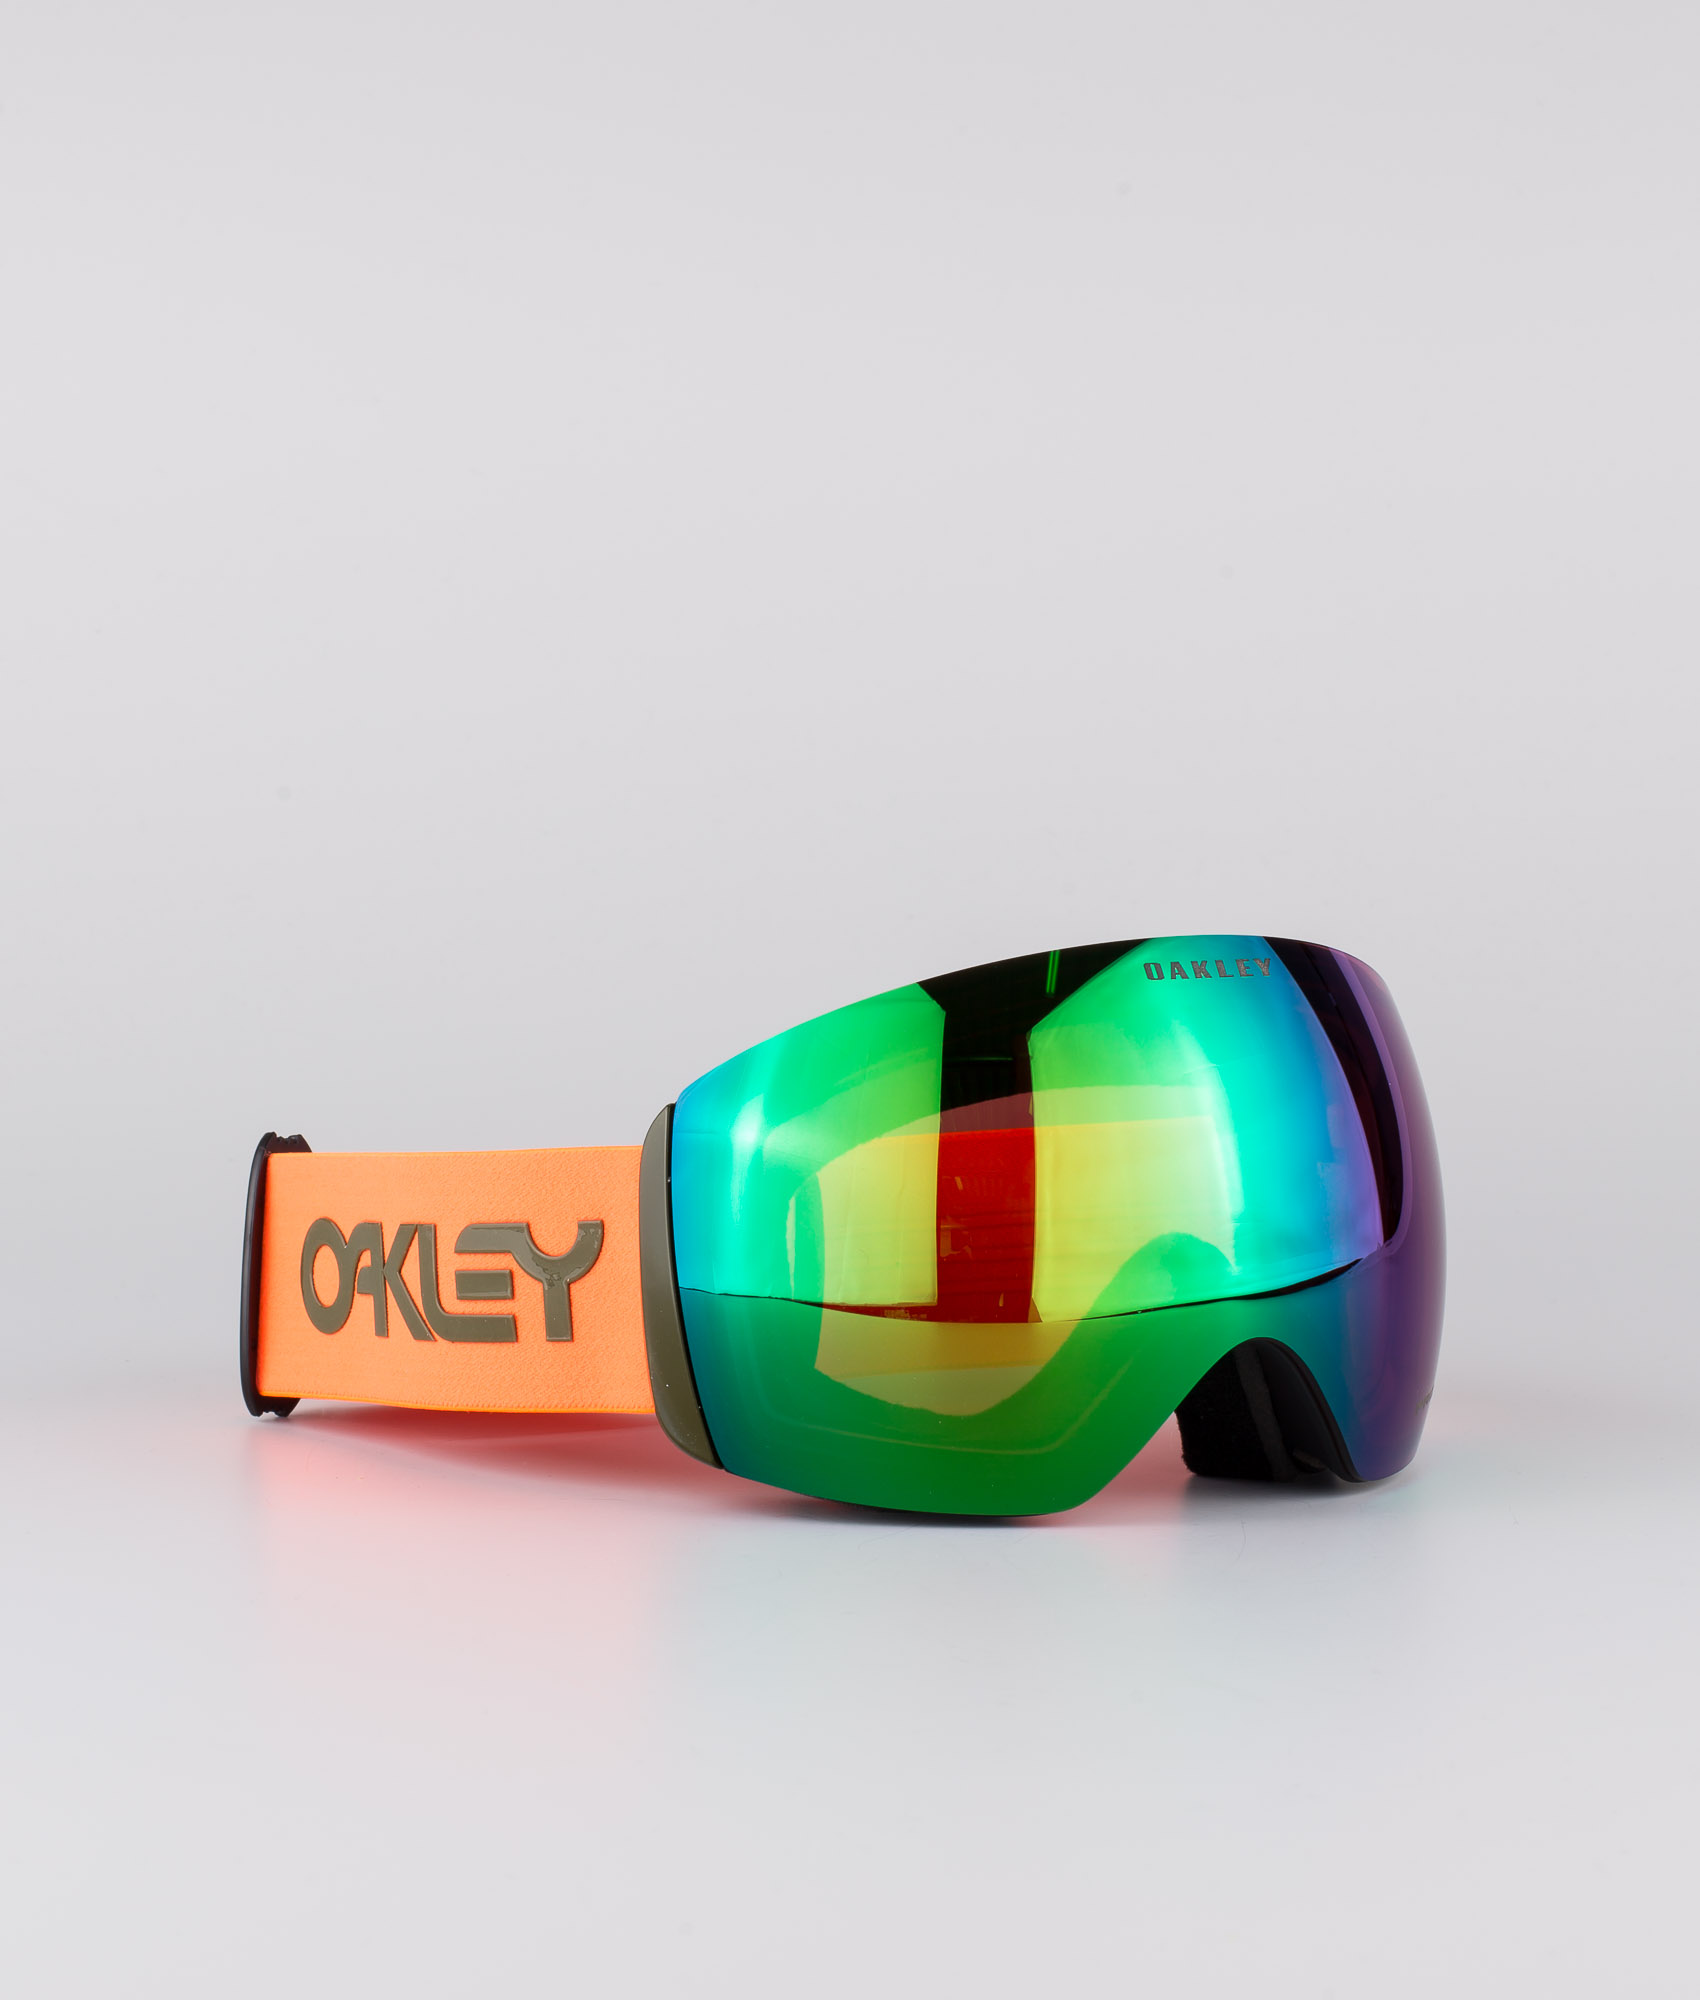 oakley pilot goggles